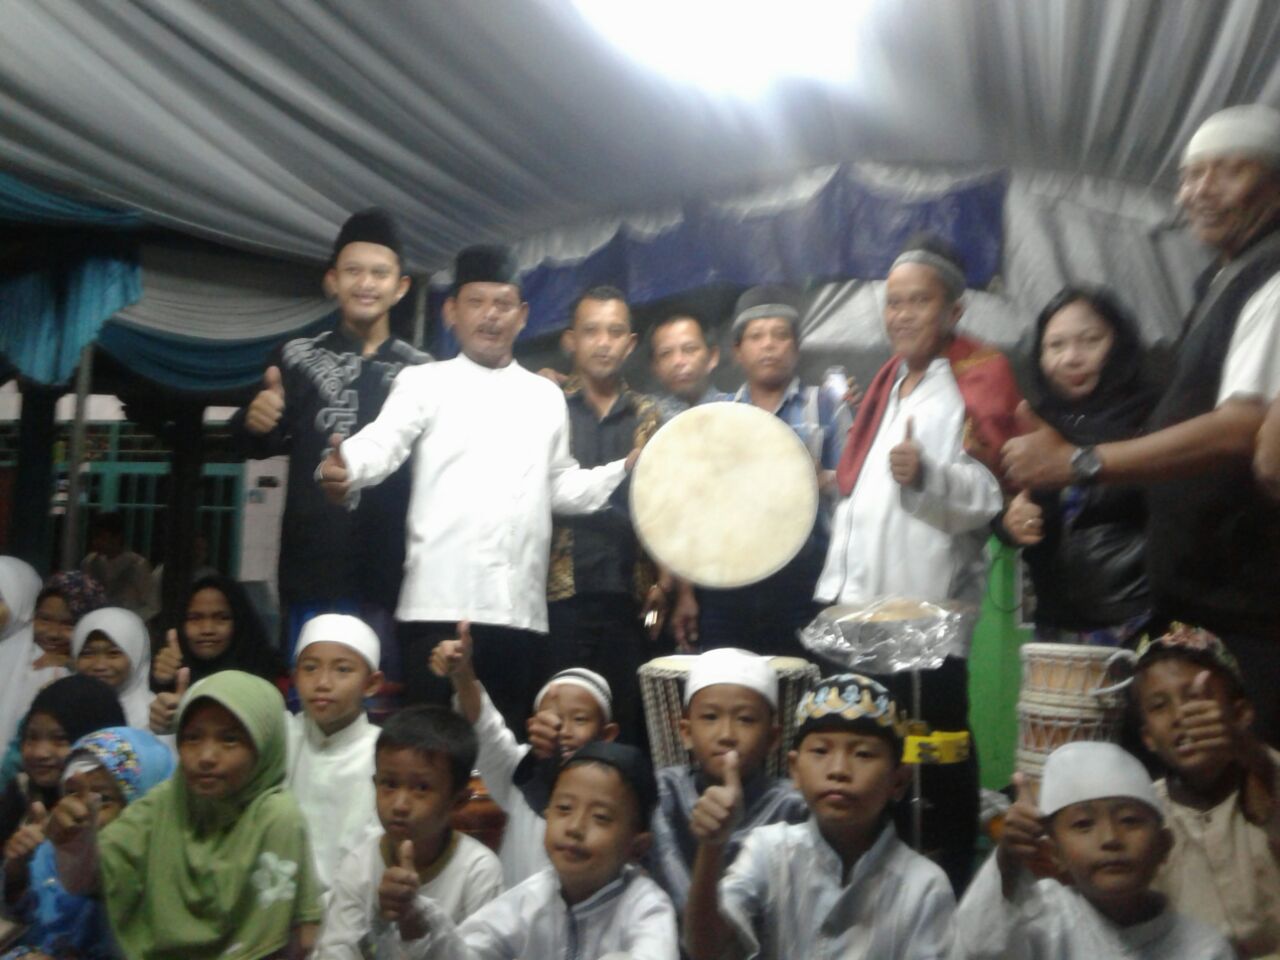 Komunitas Sedekah Rombongan (SR) Sumbang Alat Musik Hadrah ke Majelis Taklim Miftahul Jannah Kelurahan Sukaresmi